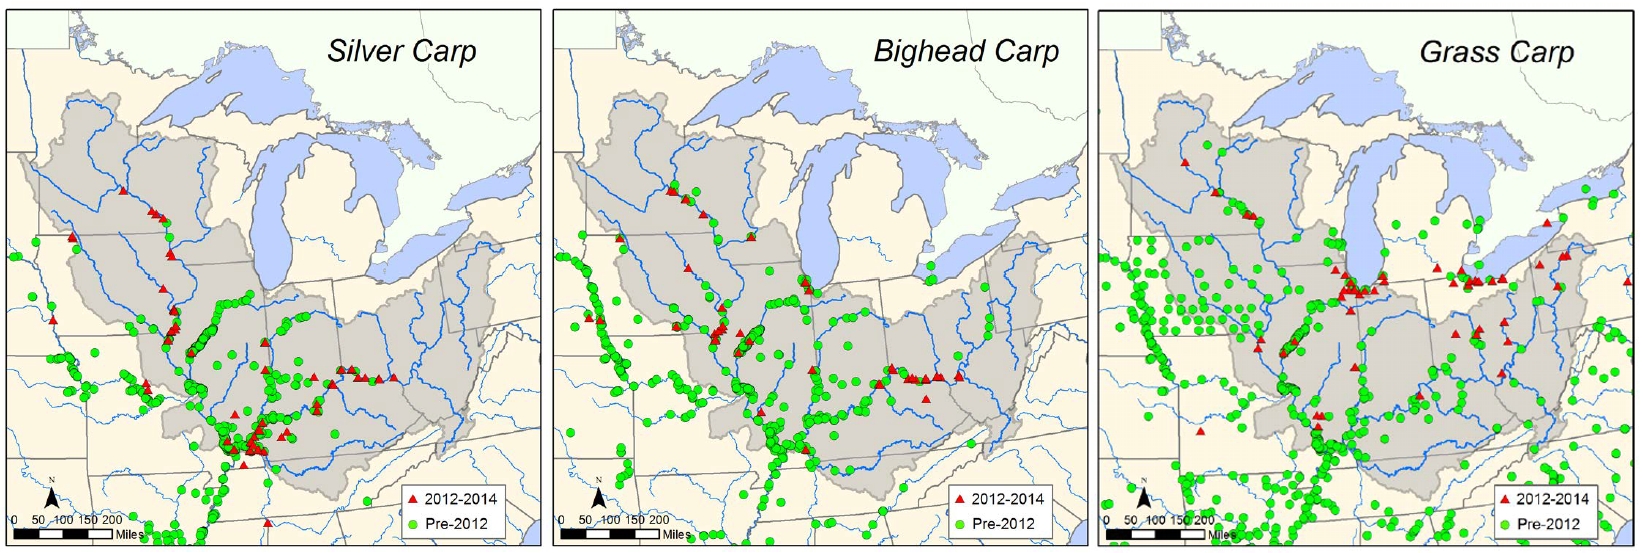 Asian Carp Distribution